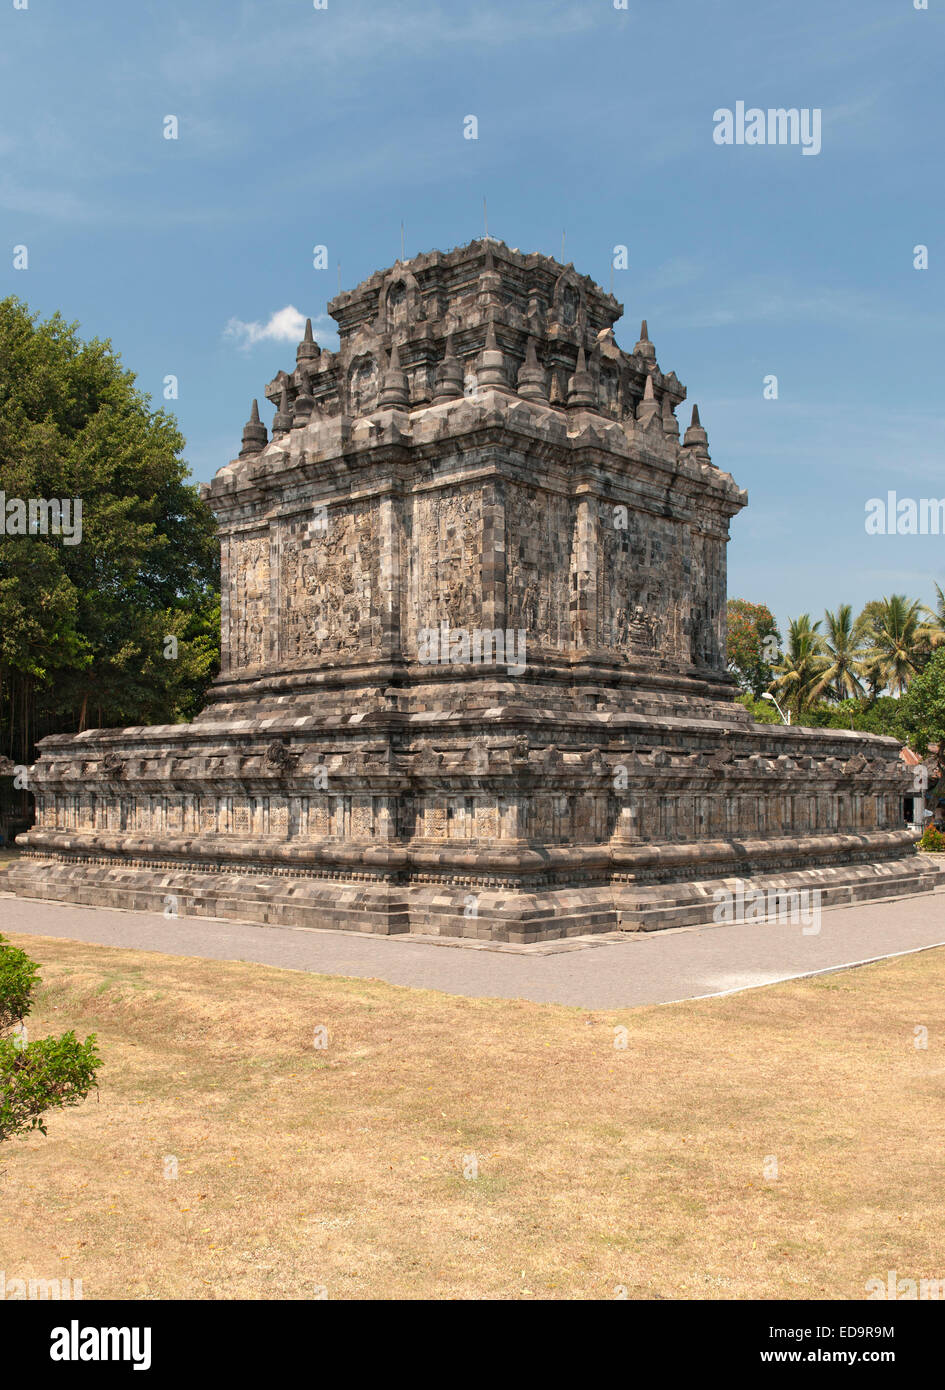 Candi Mendut, ein 9. Jahrhundert buddhistischer Tempel Borobodur in Magelang, nahe Yogyakarta in Zentraljava, Indonesien verbunden. Stockfoto